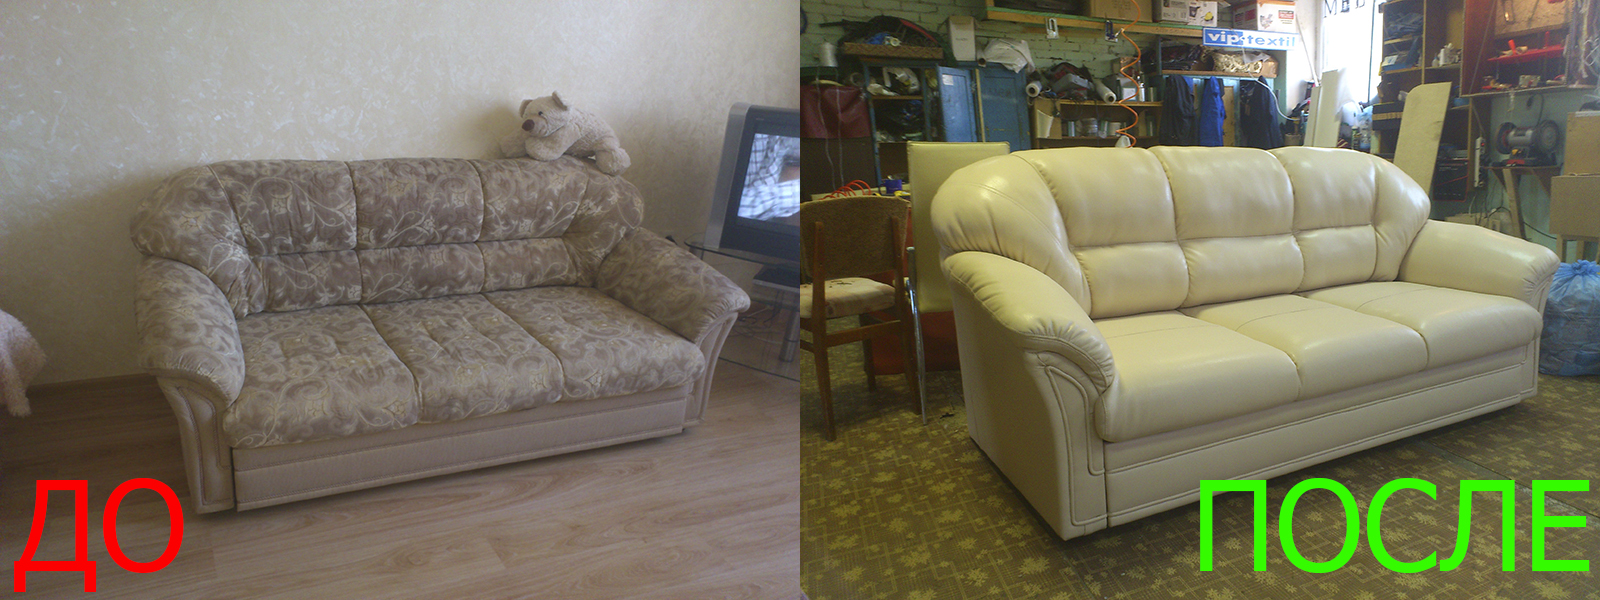 Перетяжка мебели в Евпатории на дому и с вывозом - разумные цены на услуги